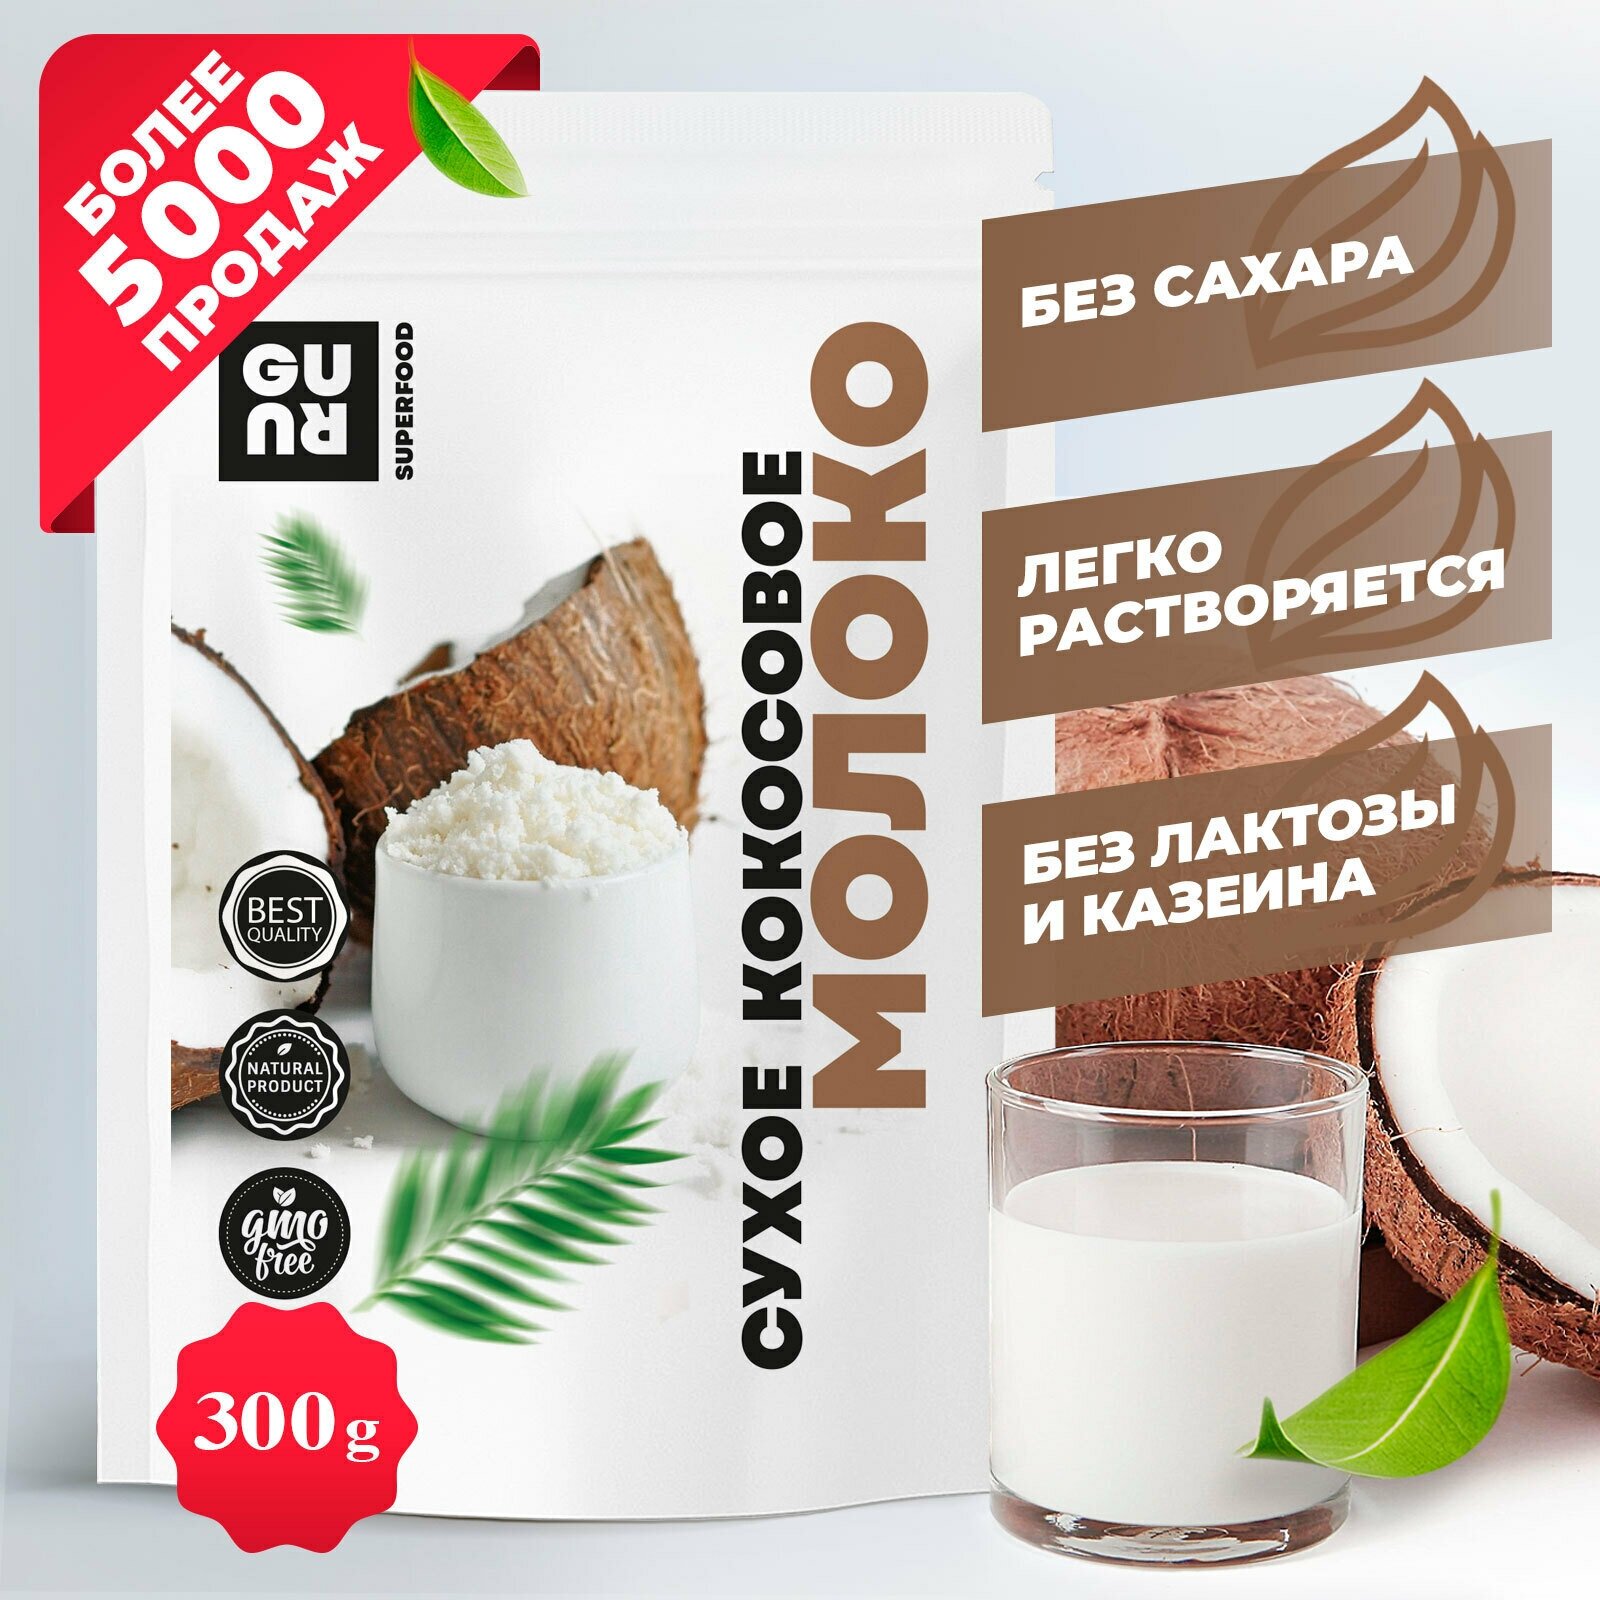 Cухой растительный кокосовый напиток (натуральный растворимый растительный для кофе, для матчи, без казеина, без лактозы и без сахара), 300 грамм